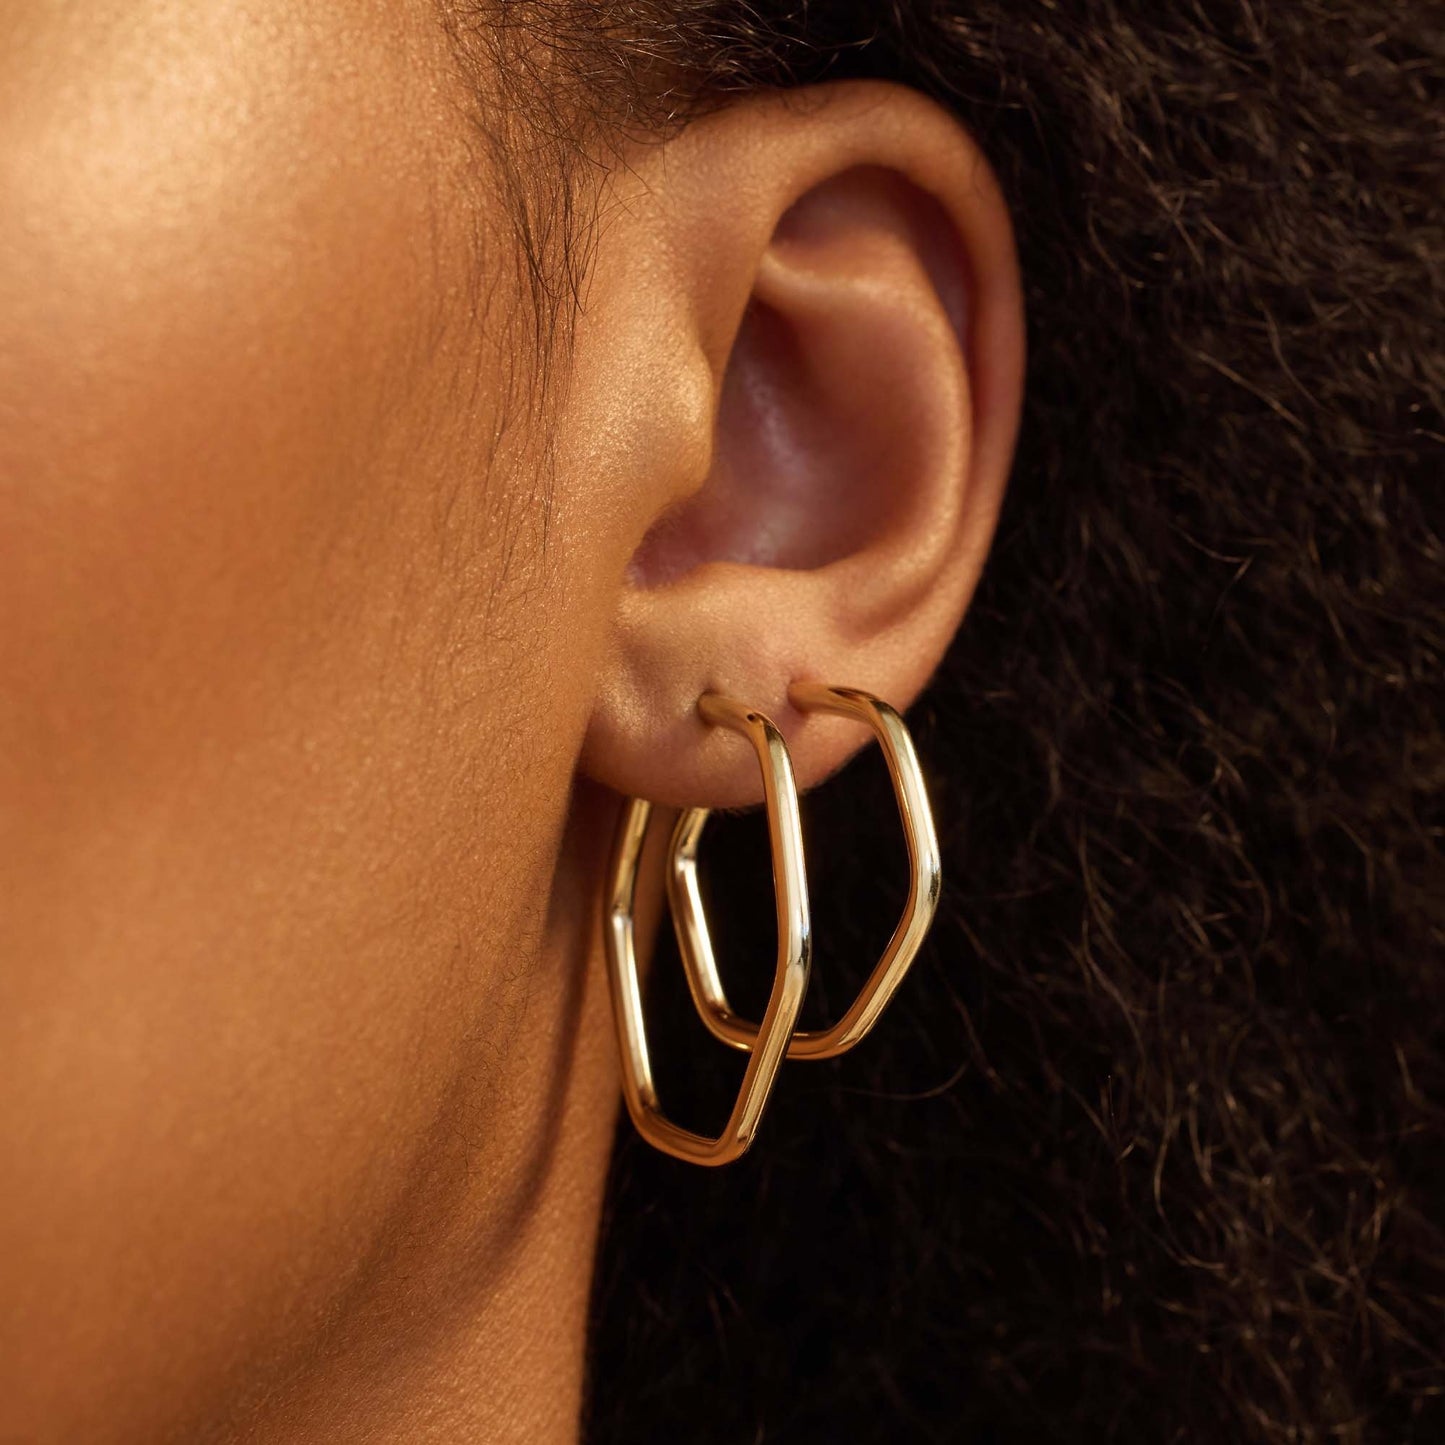 La Rinascente Francesca 9 karat gold hoop earrings (28 mm)